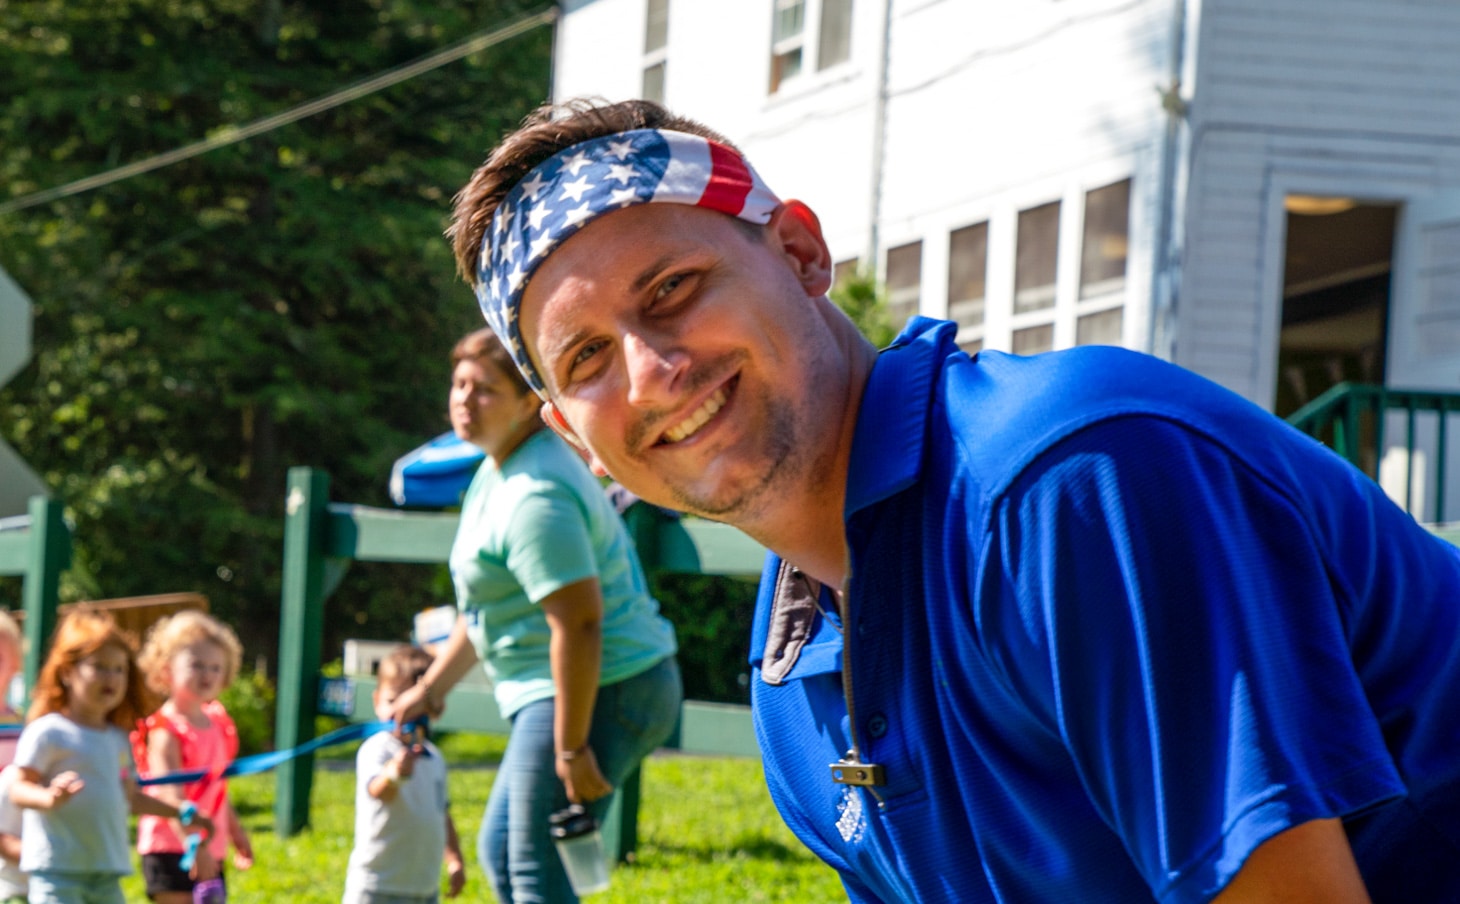 Jay with an American flag headband leading a team.